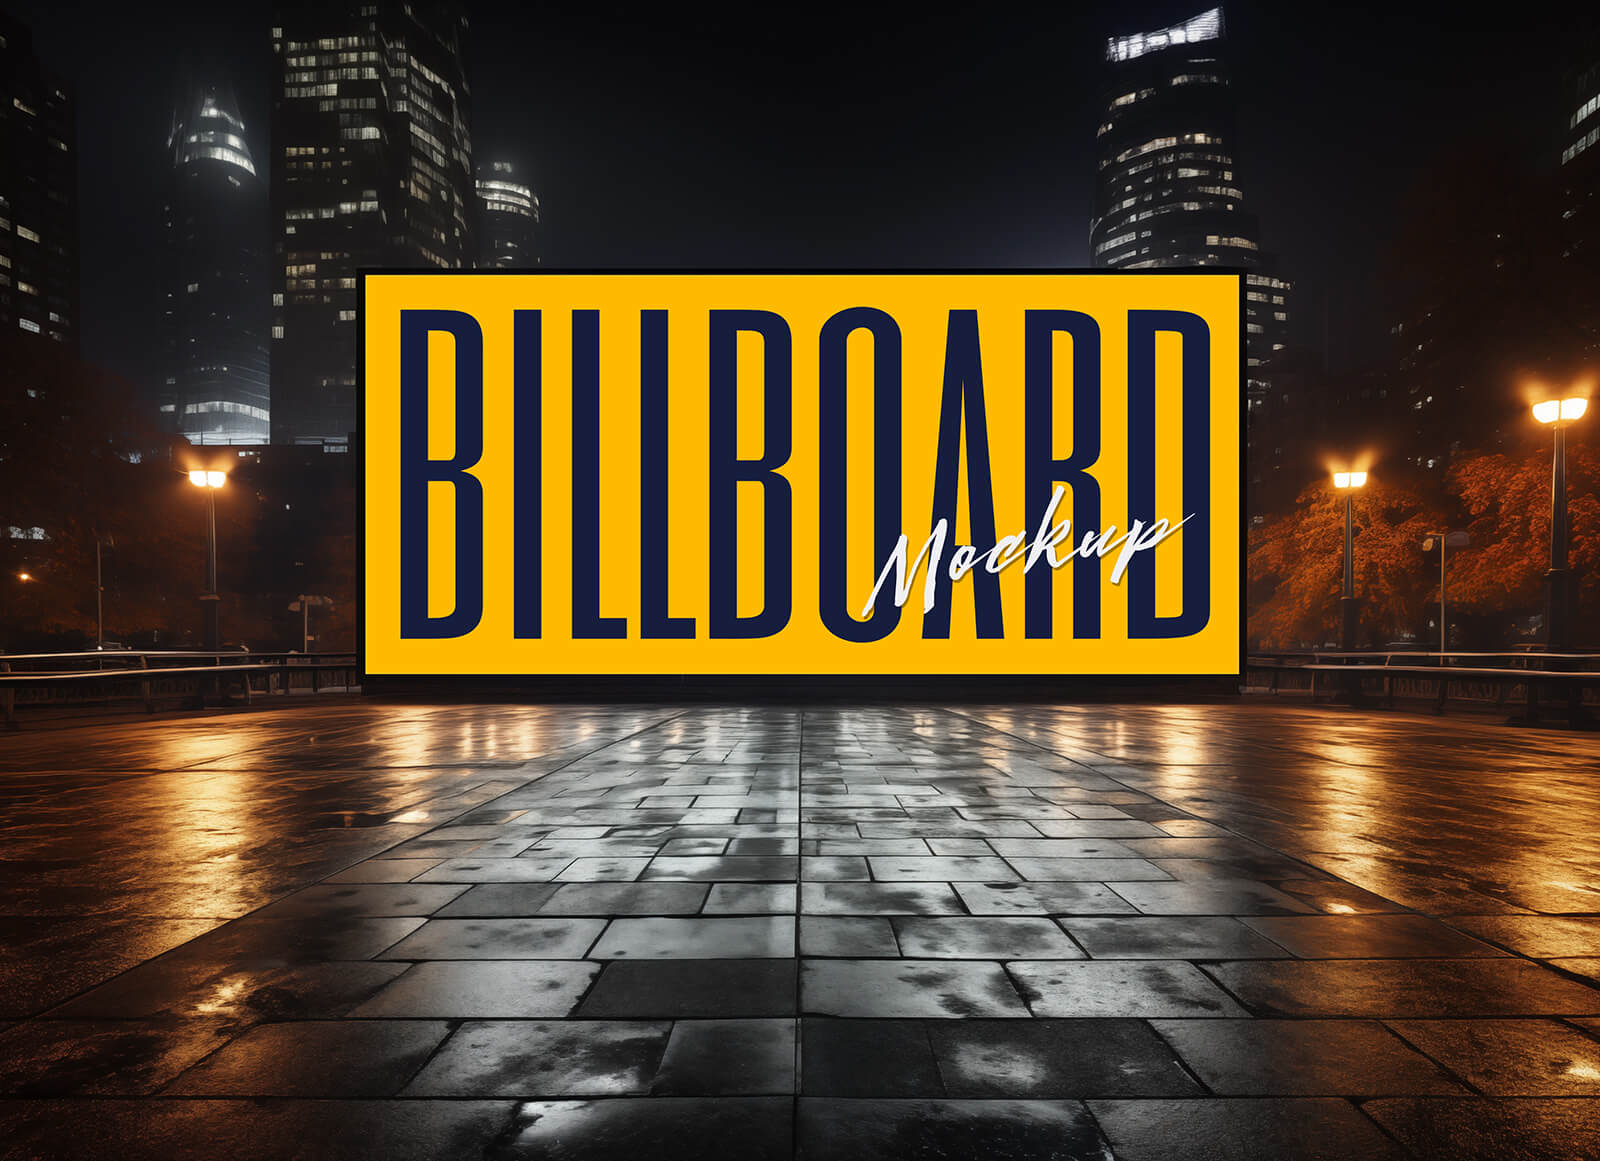 Billboard View Night Mockup